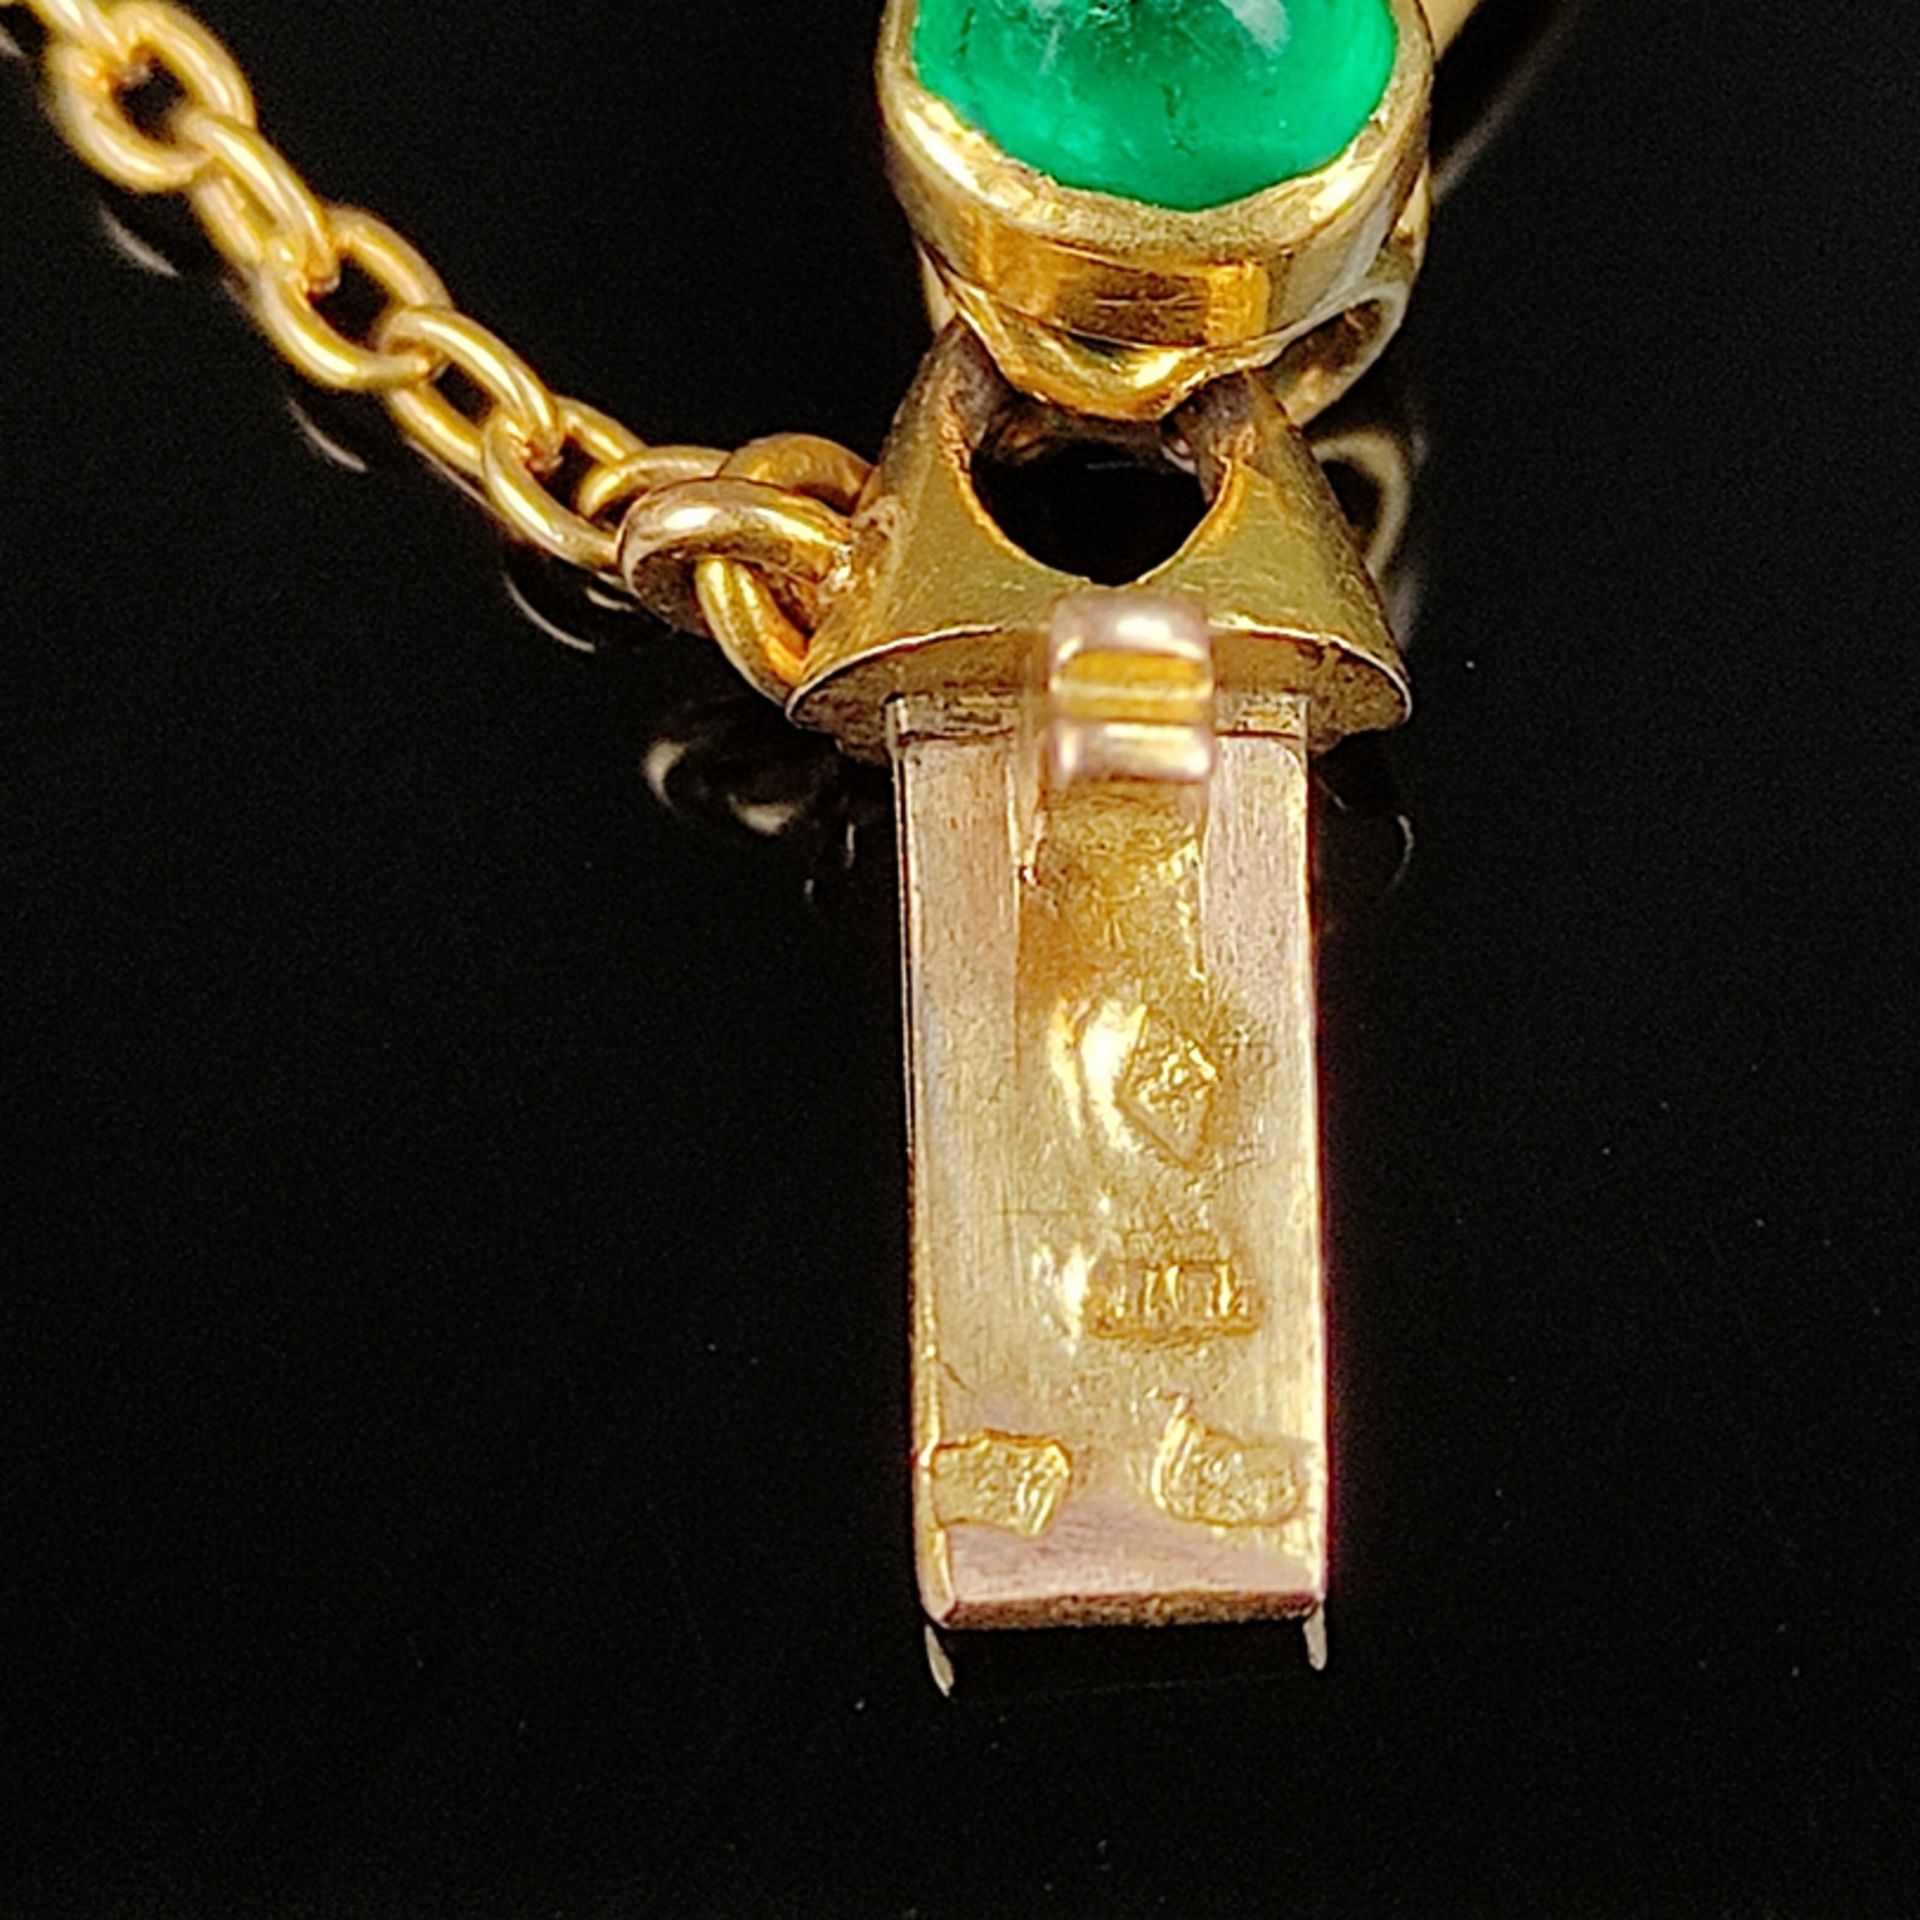 Smaragd-Diamant-Armband, 750/18K Gelbgold (getestet und unleserlich punziert), 23,87g, Armband aus  - Bild 2 aus 2